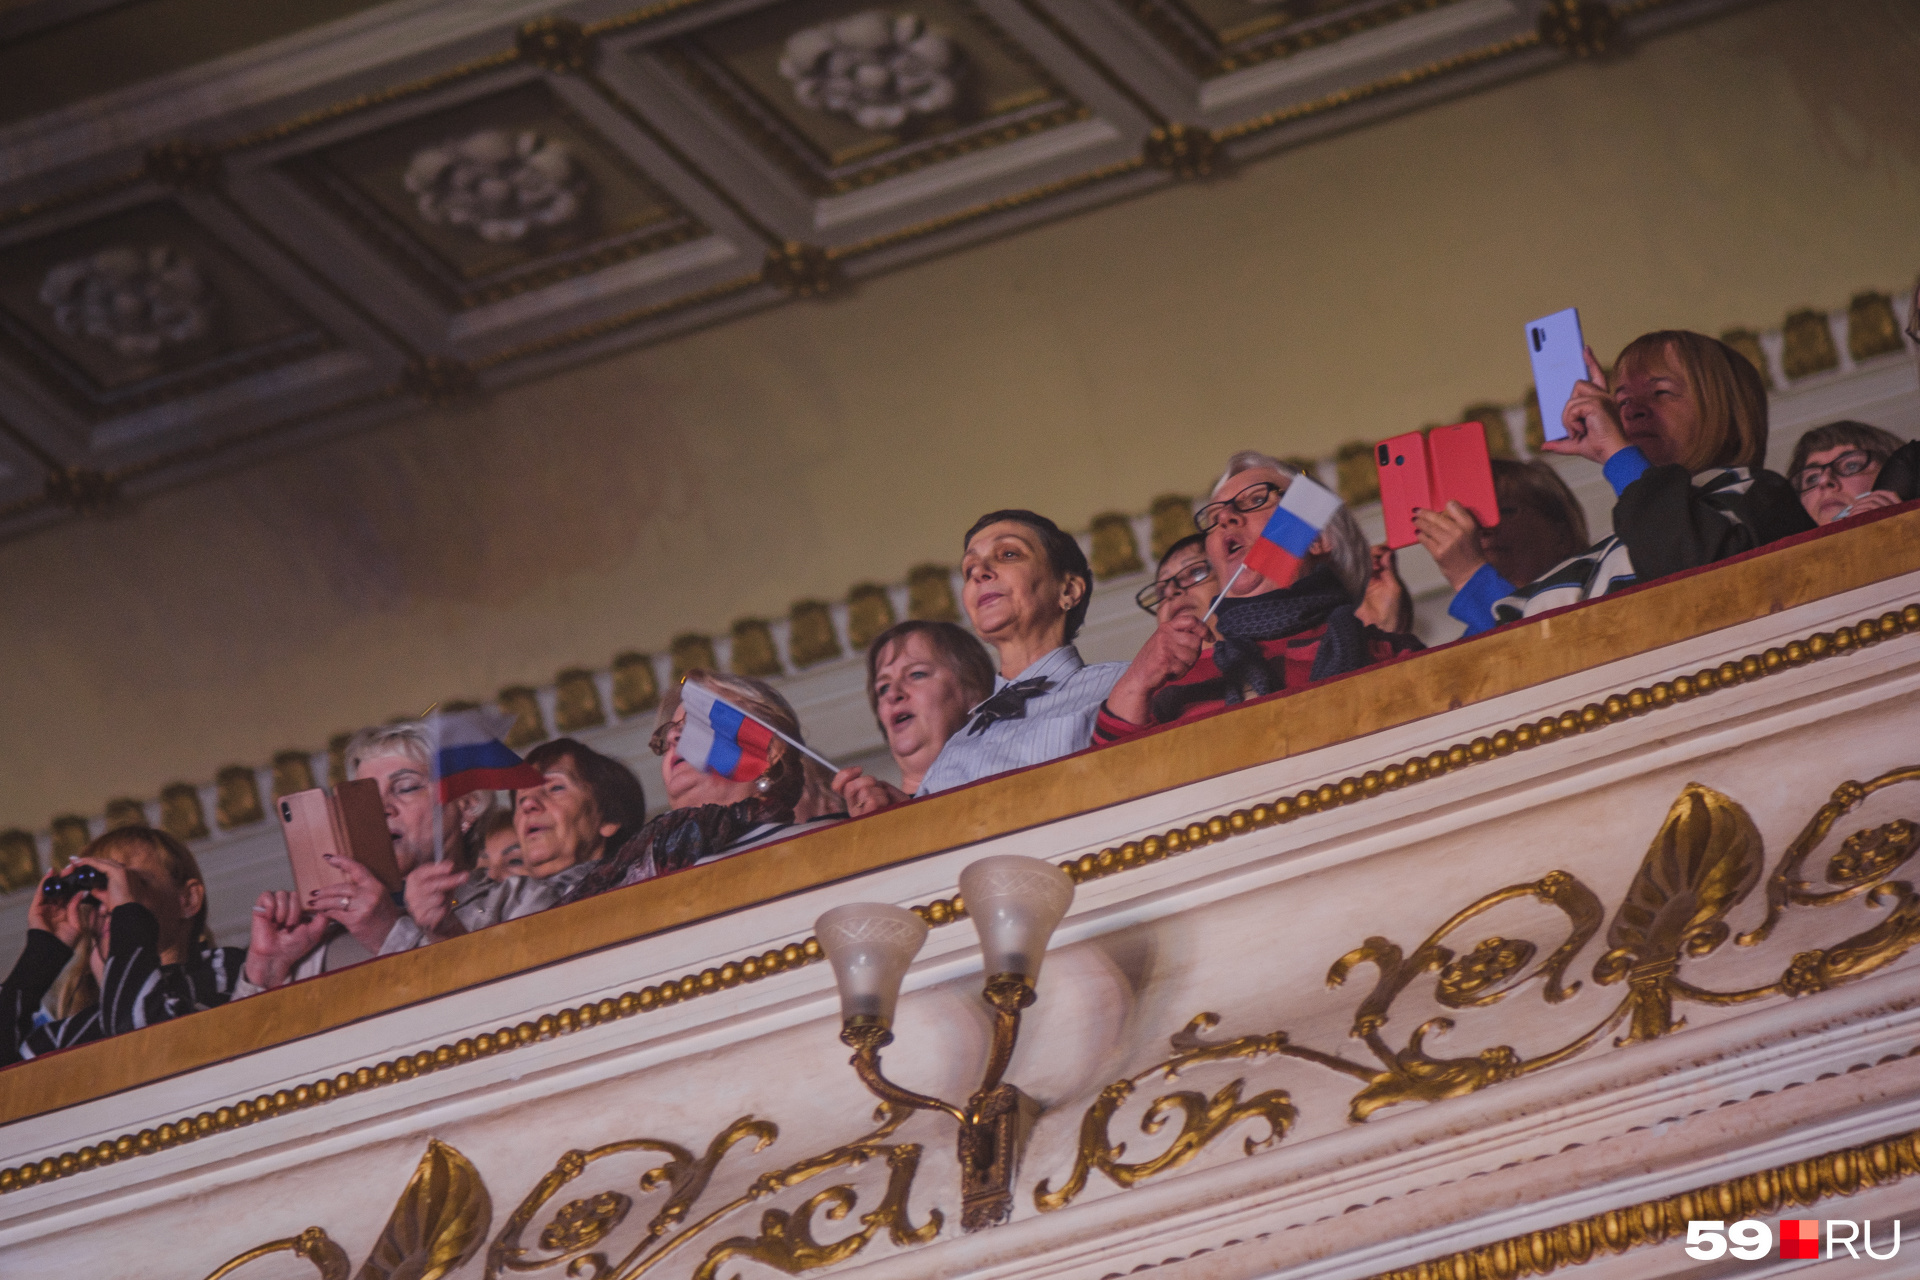 Зрители на балконе тоже с флажками. Расстояние их не пугает — они всё равно снимают на телефон выступление Ярослава